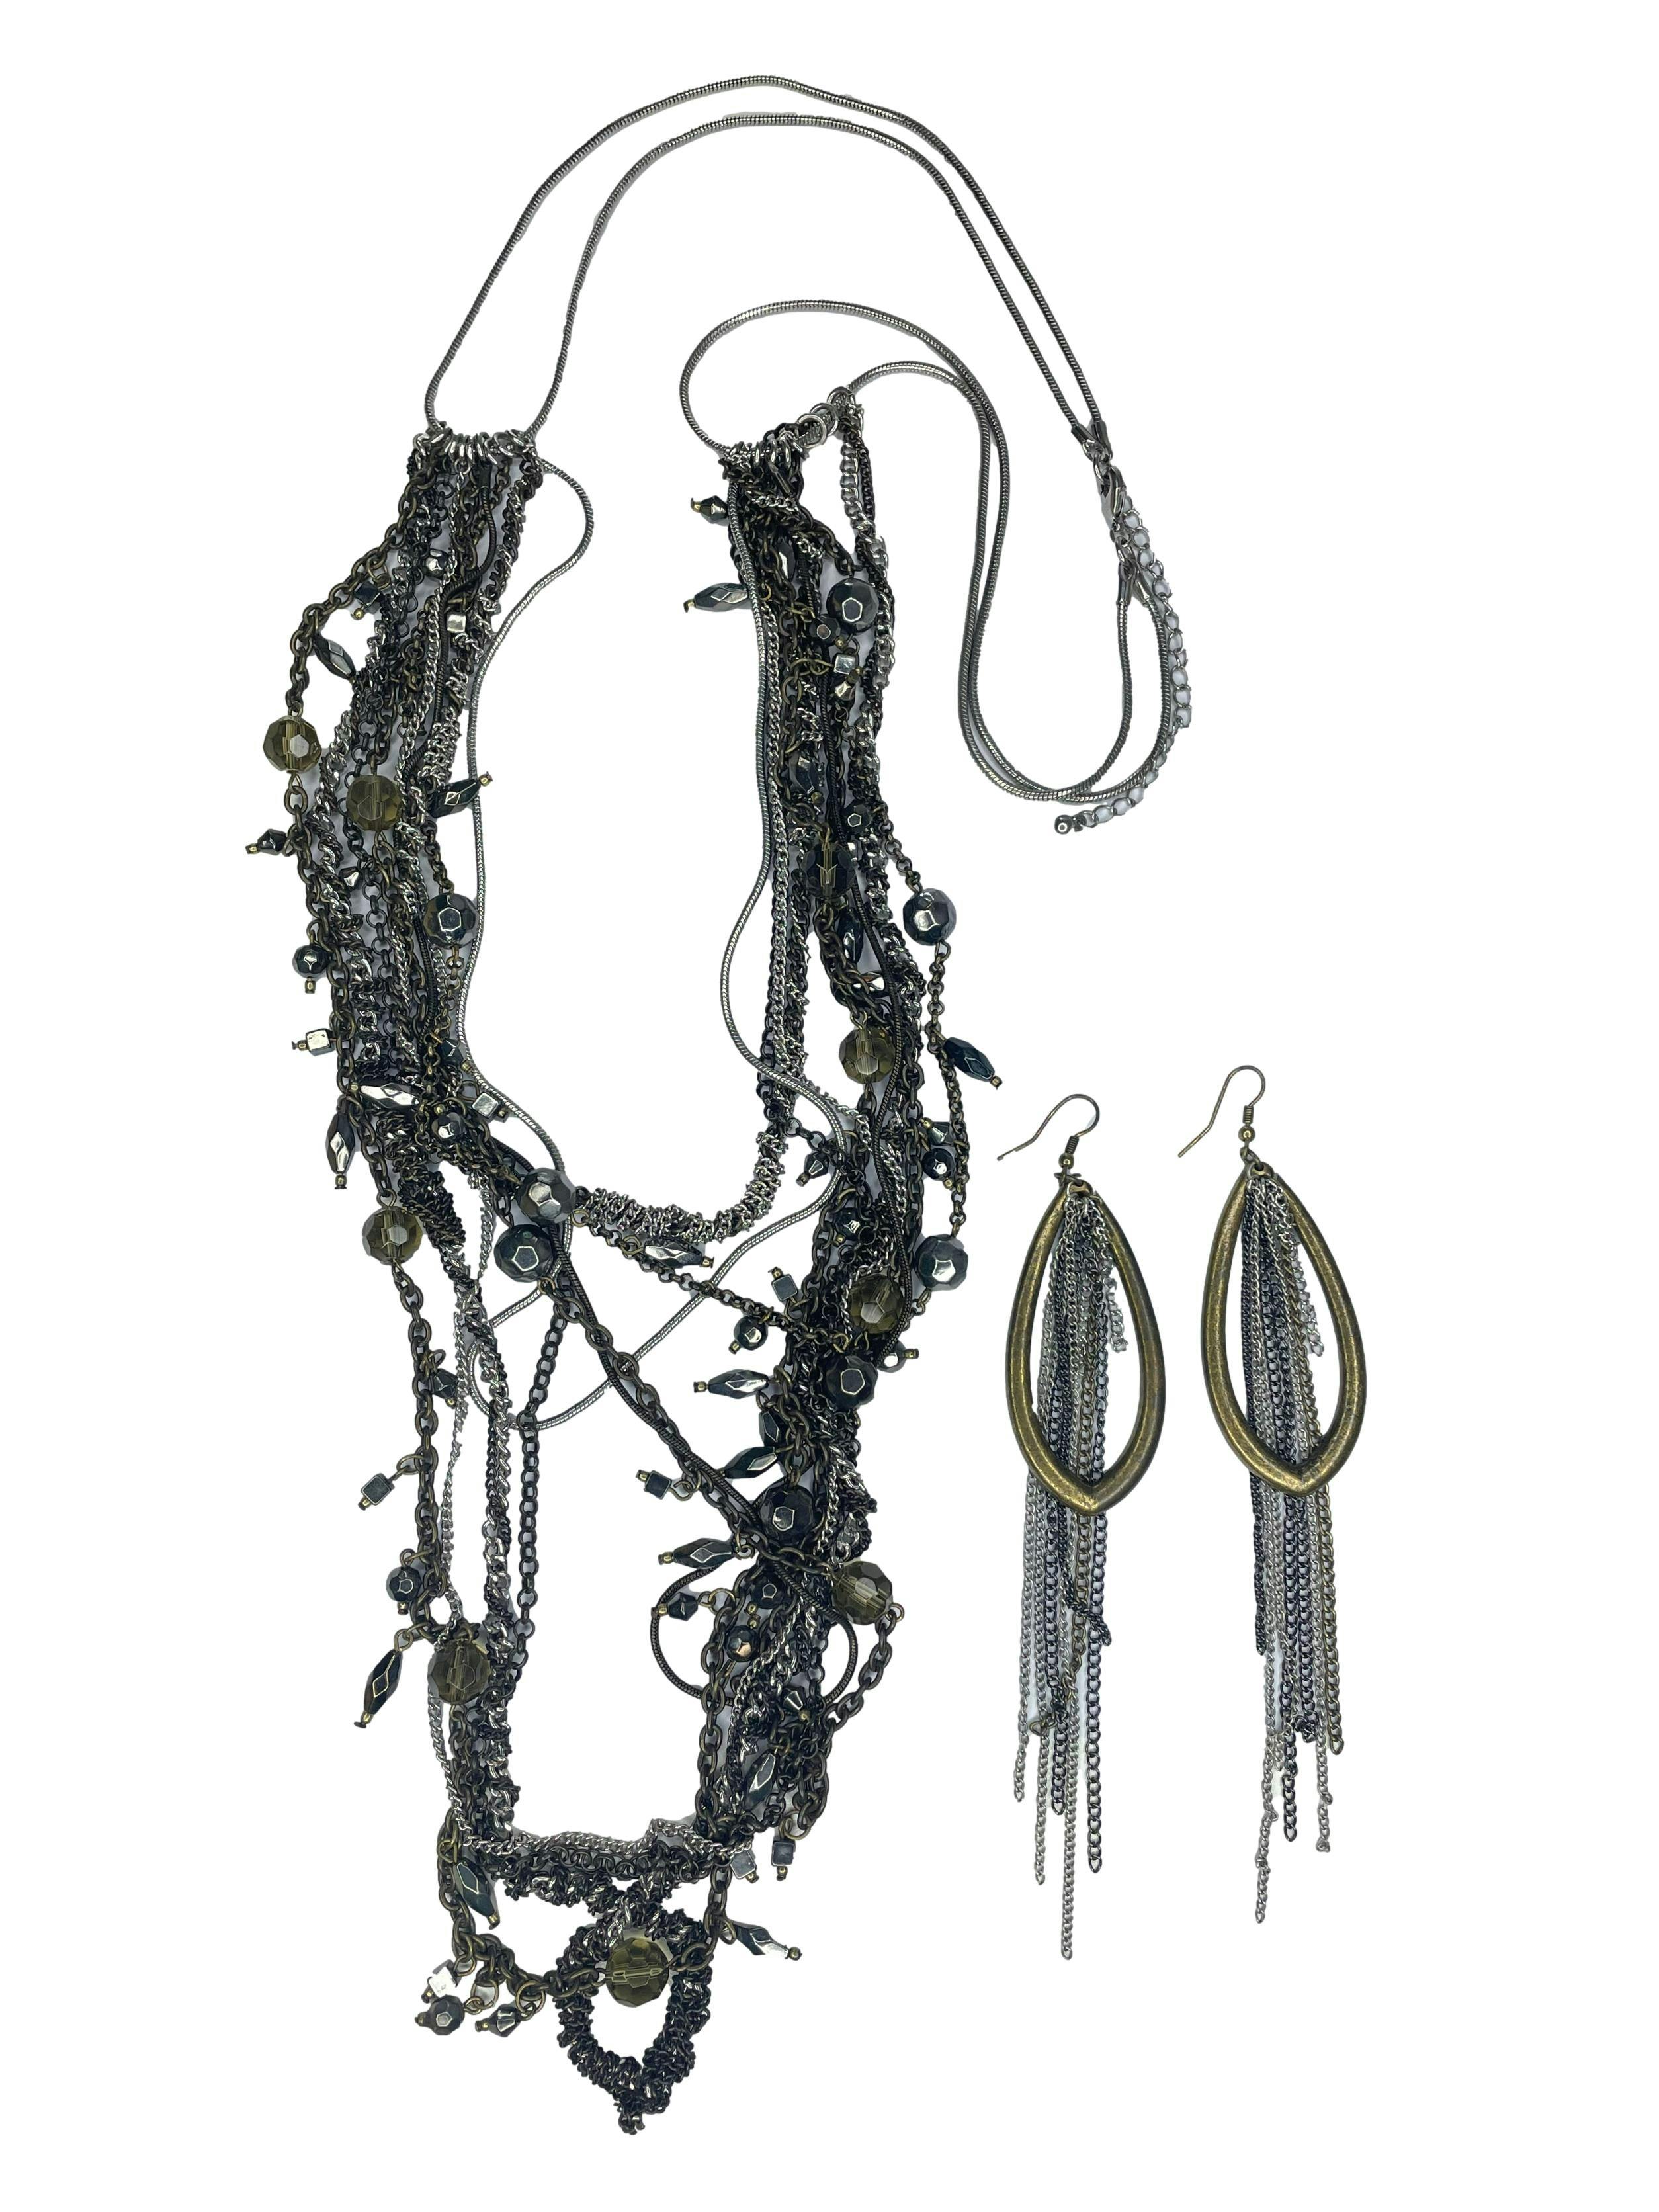 Set aretes y collar largos, collar varios tipos de  cadenas metálicas, largo 110cm. Aretes gota y cadenas colgantes, largo 15cm.